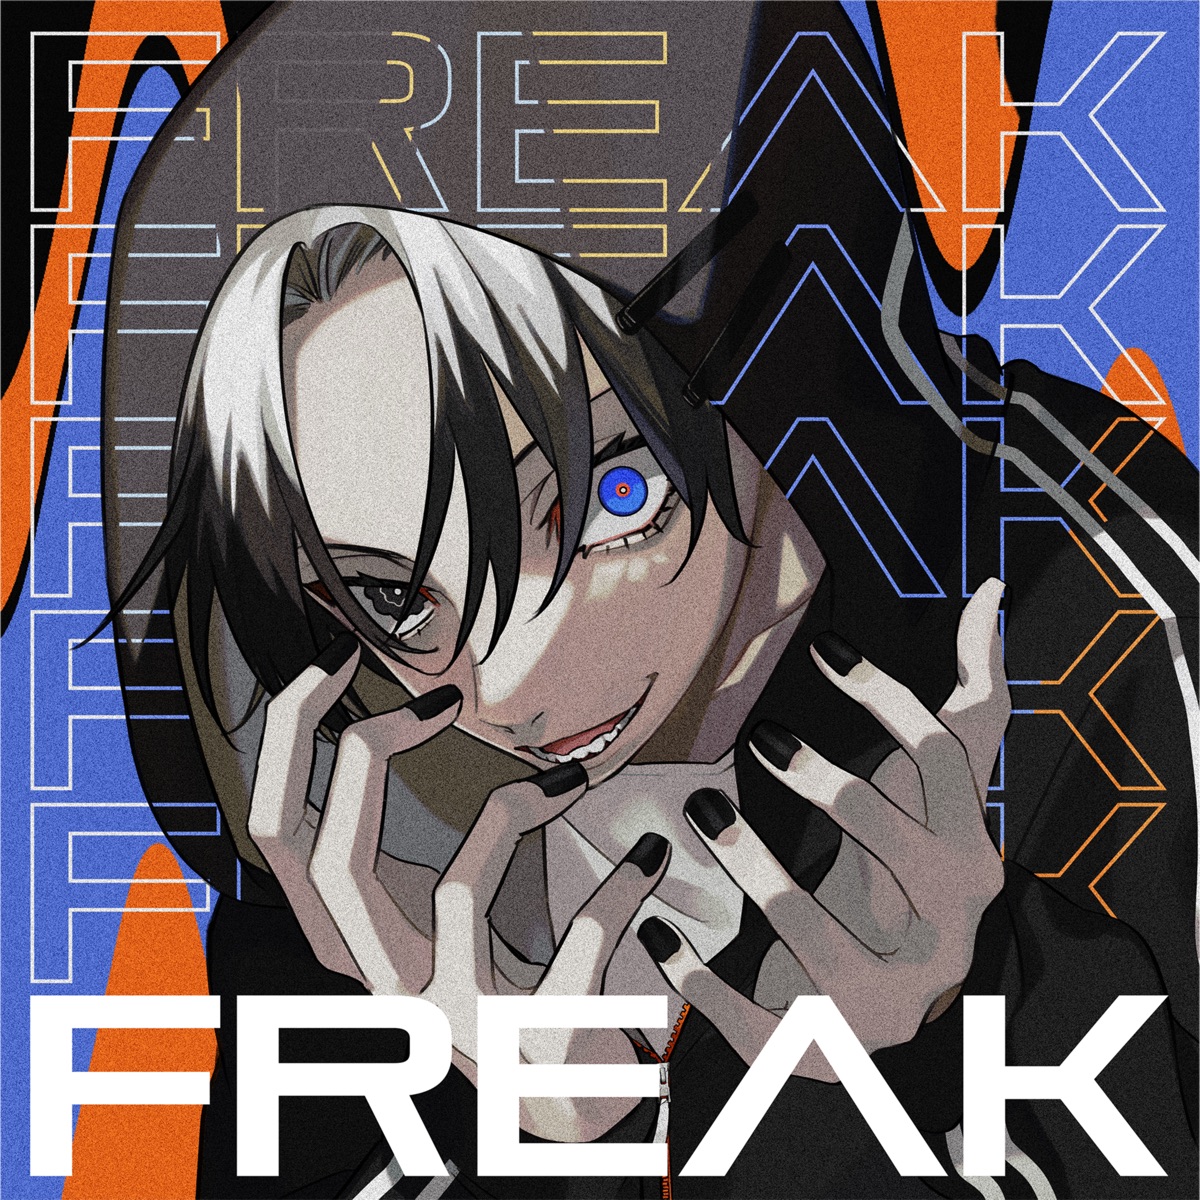 Cover art for『jon-YAKITORY & HachiojiP - FREAK feat. Yupman』from the release『FREAK feat. Yupman